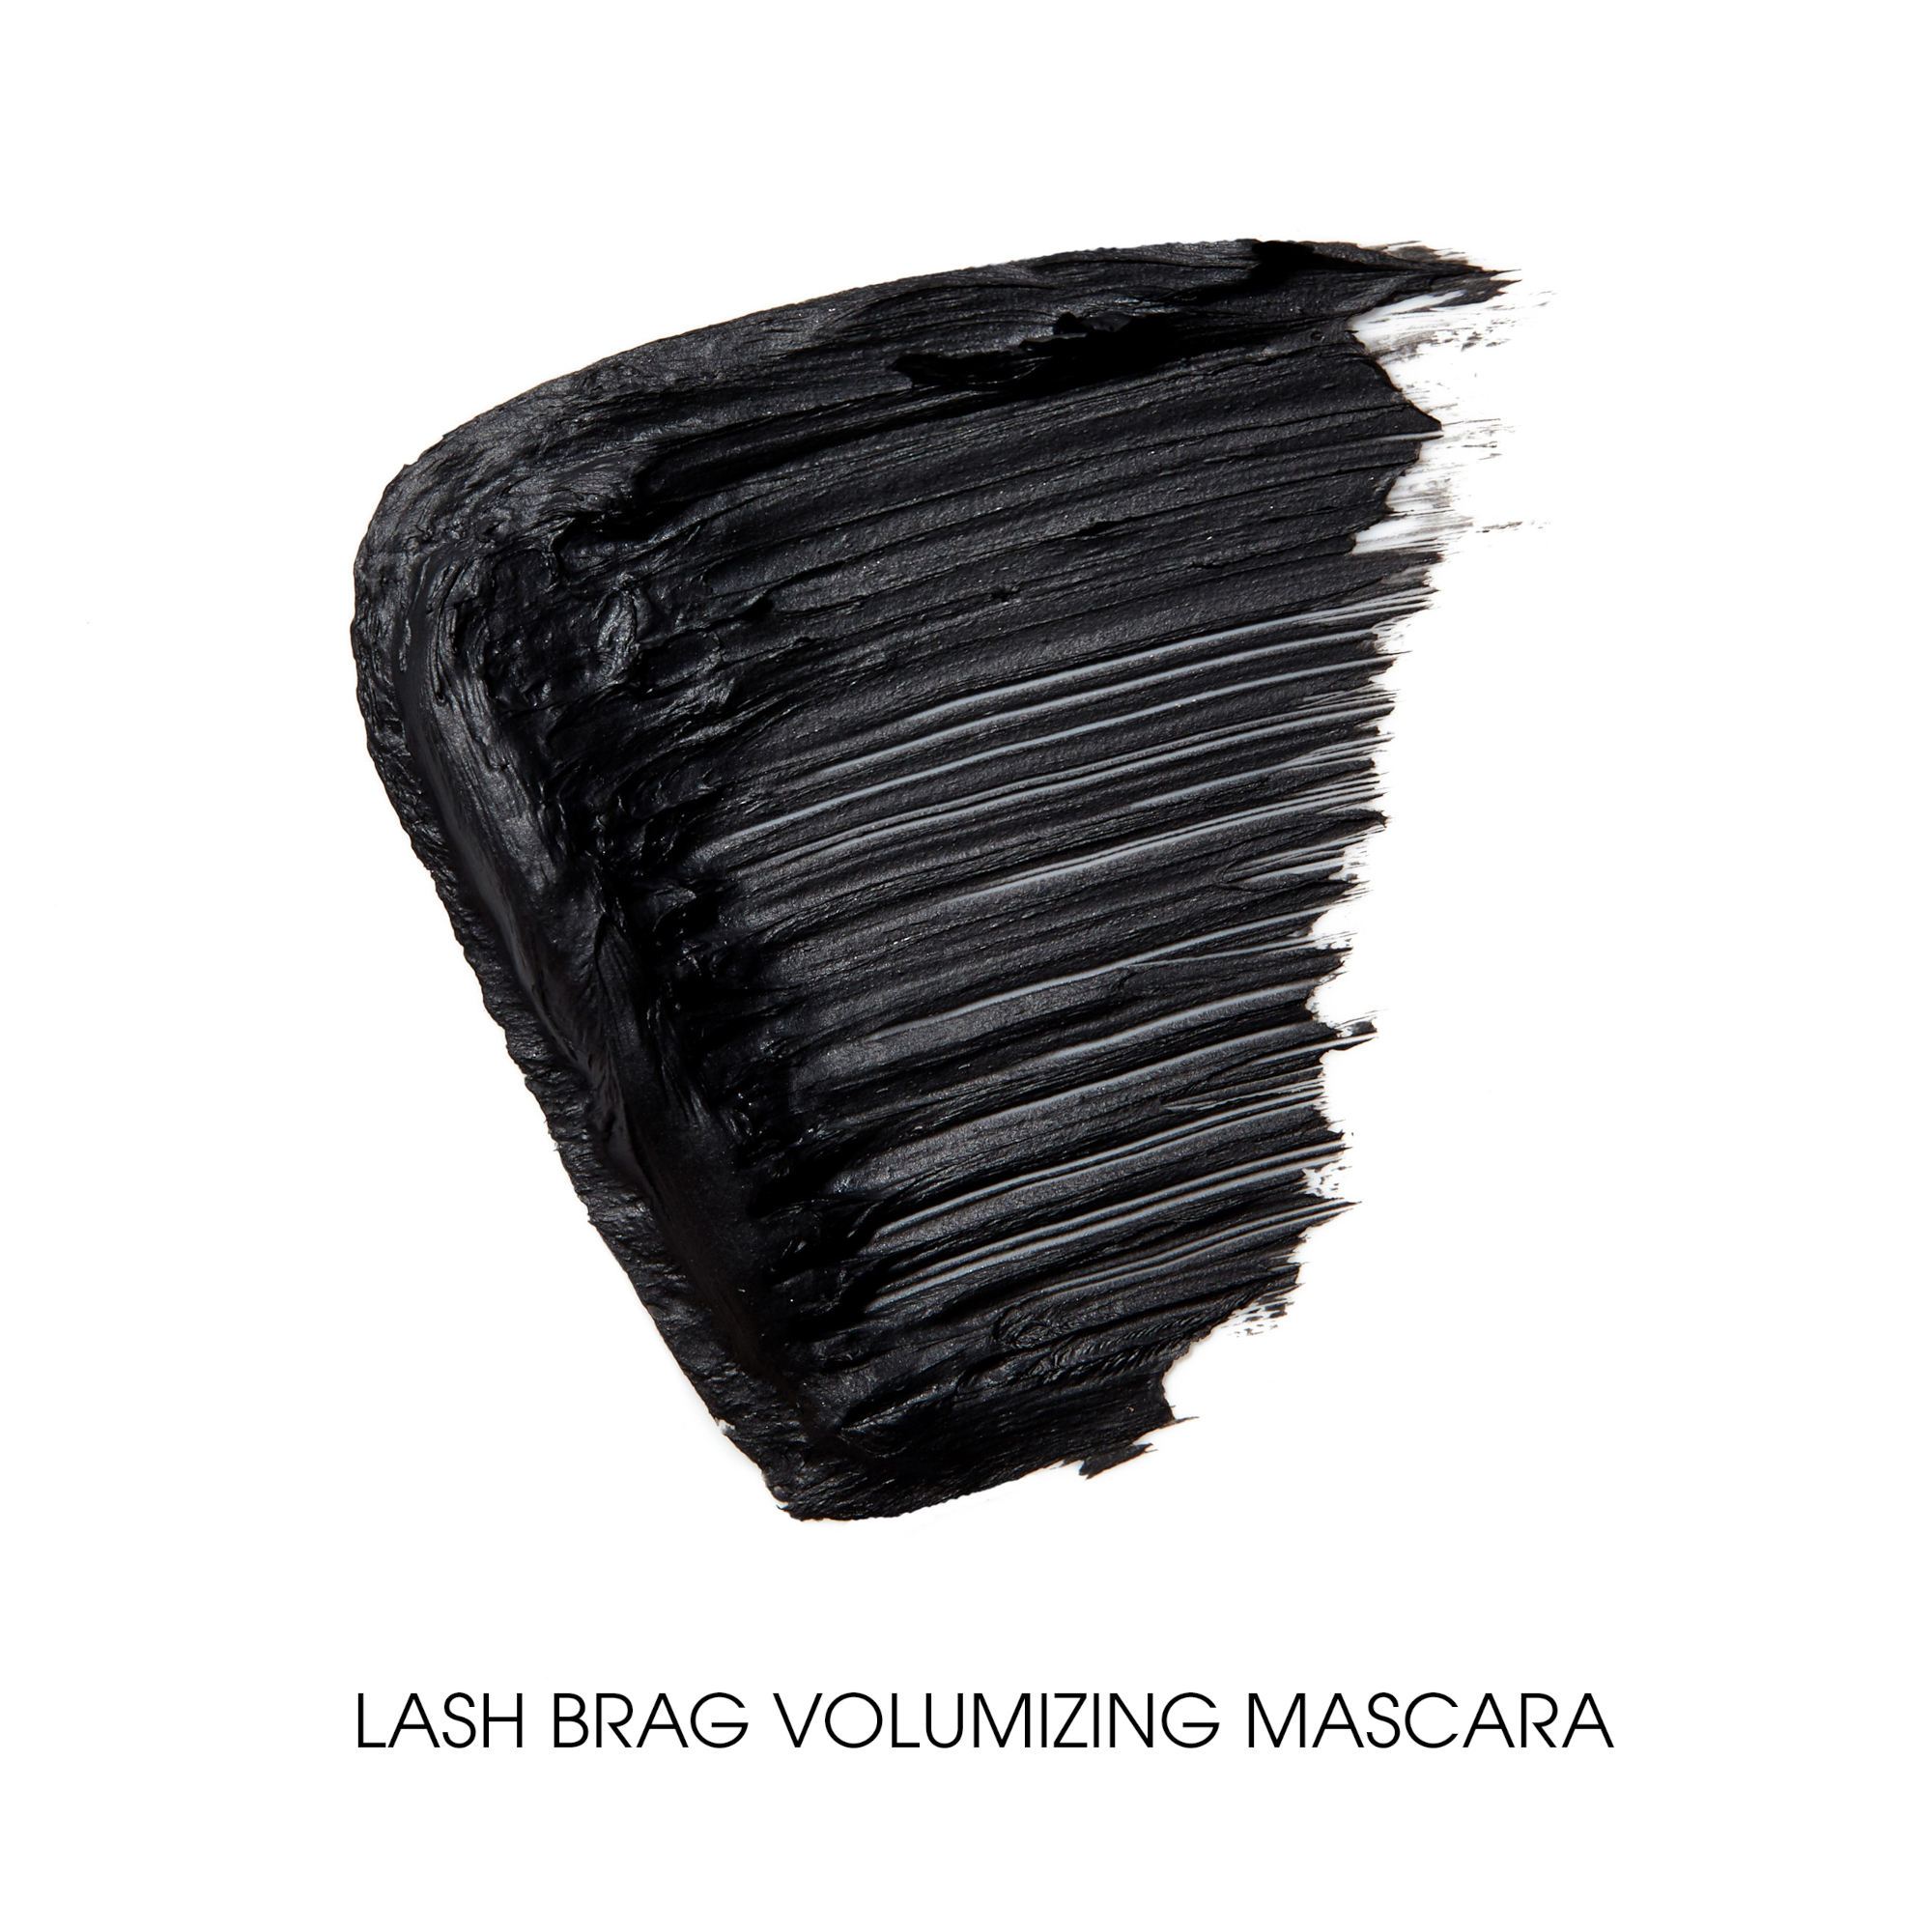 Lash Brag Volumizing Mascara - Swatch Image